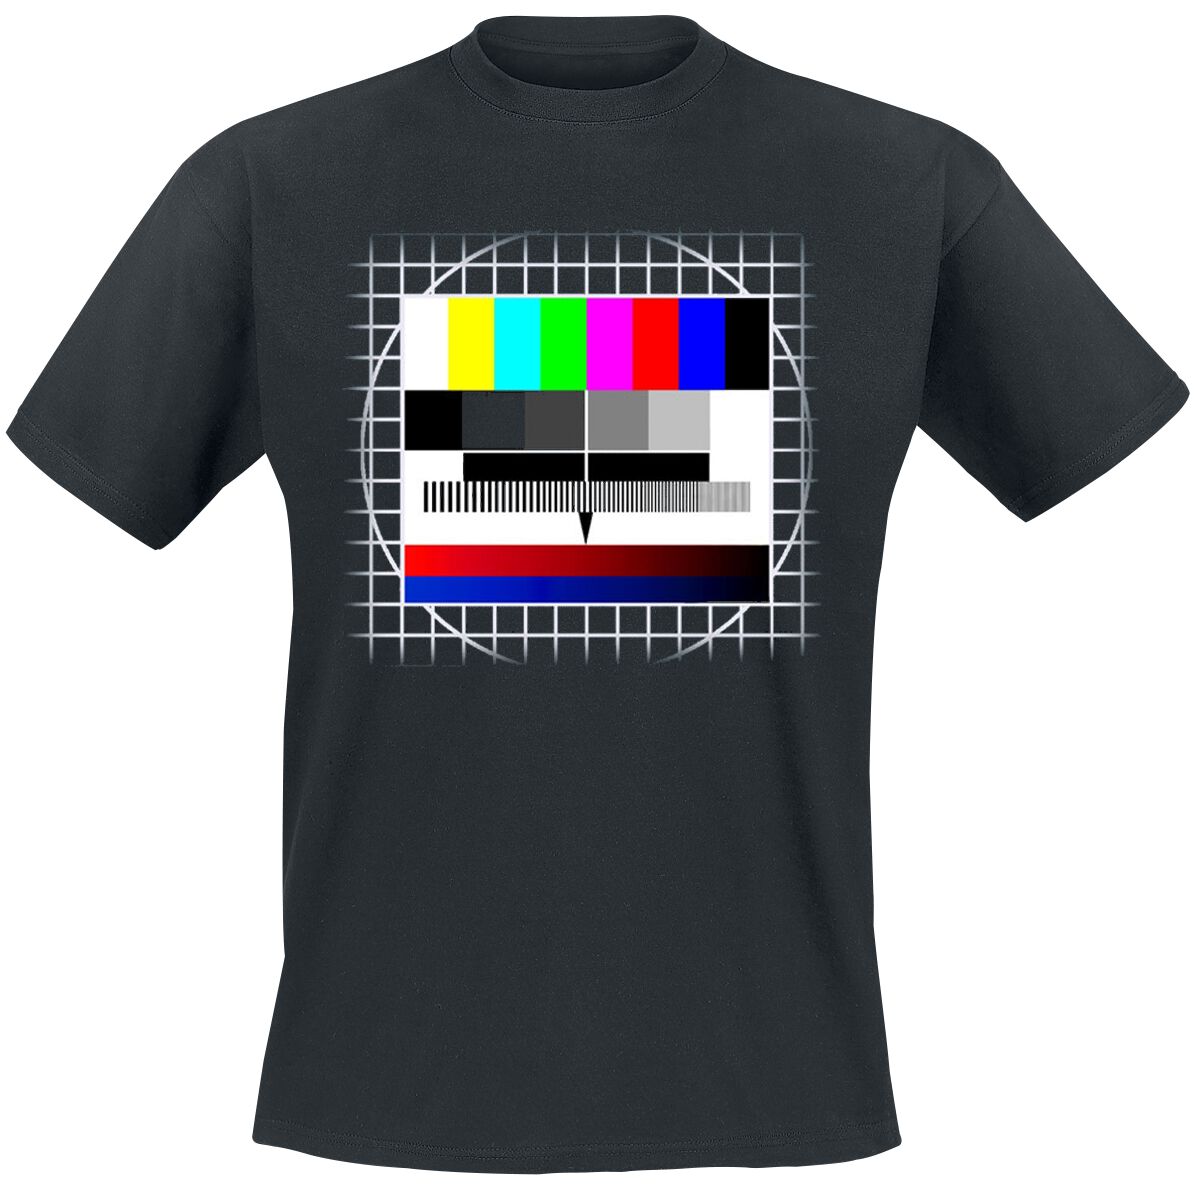 Funshirt T-Shirt - Testbild - S bis 3XL - für Männer - Größe S - schwarz